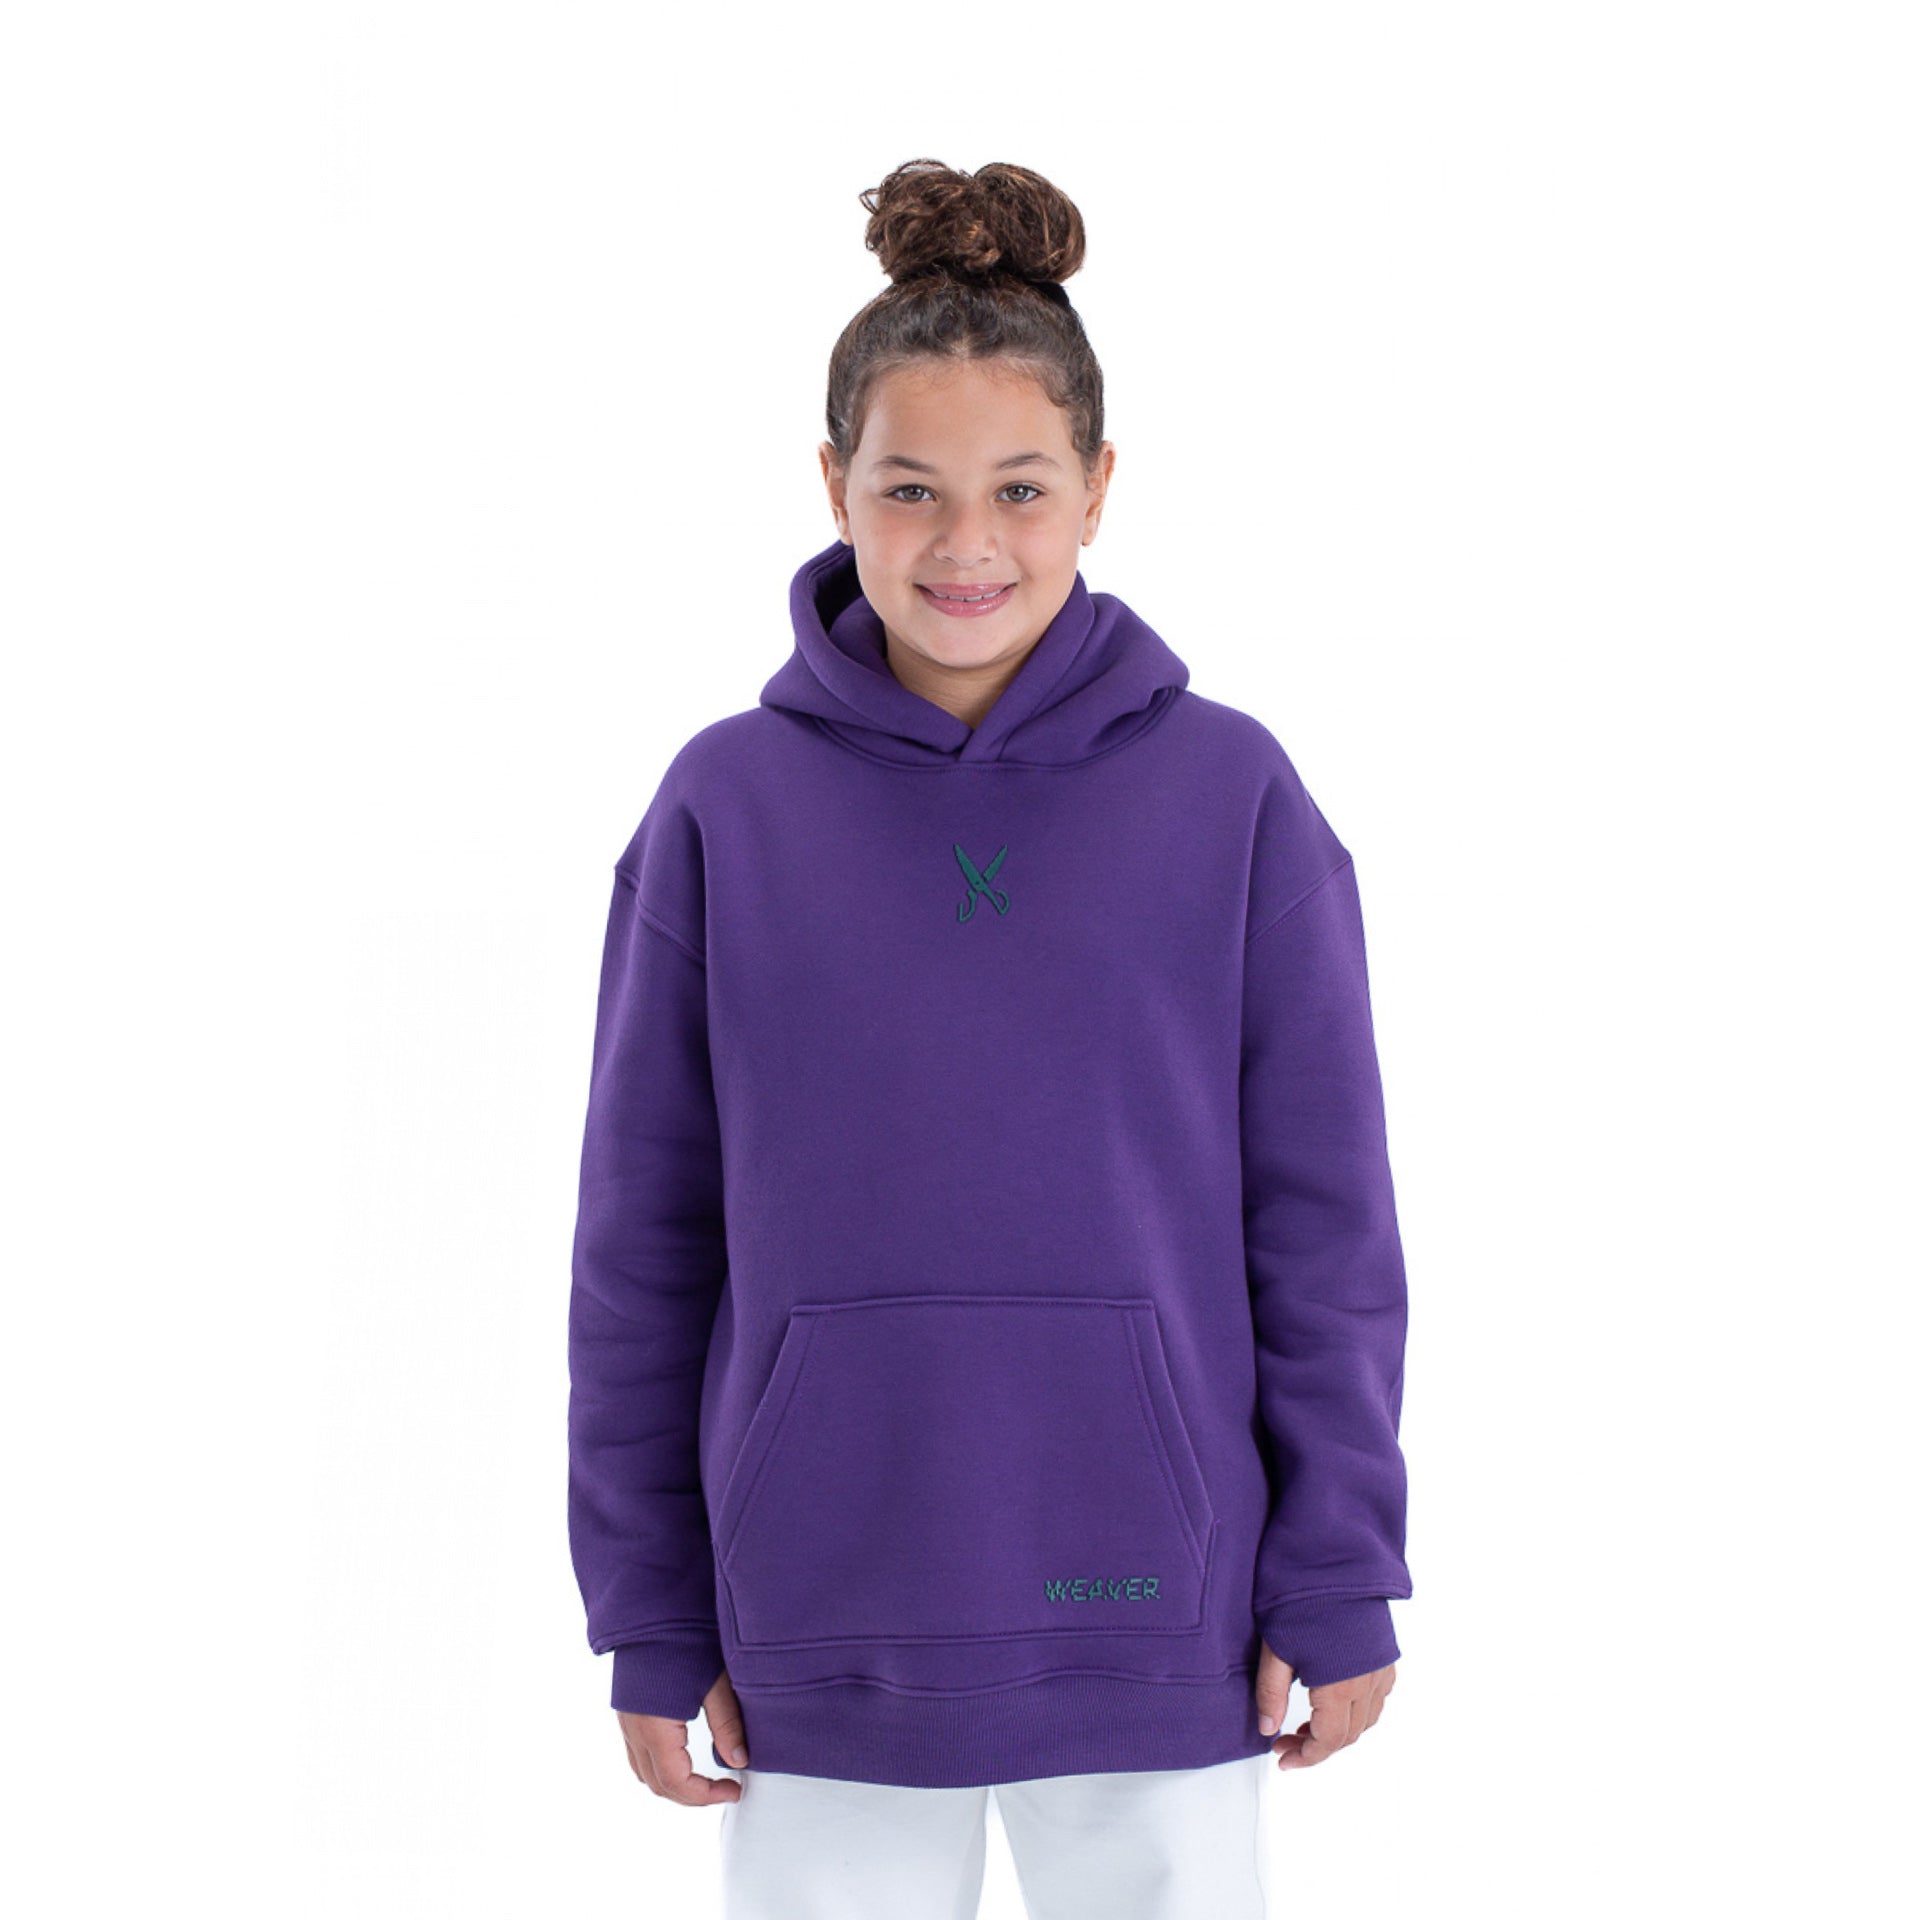 Purple Kids Hoodie By Weaver Design